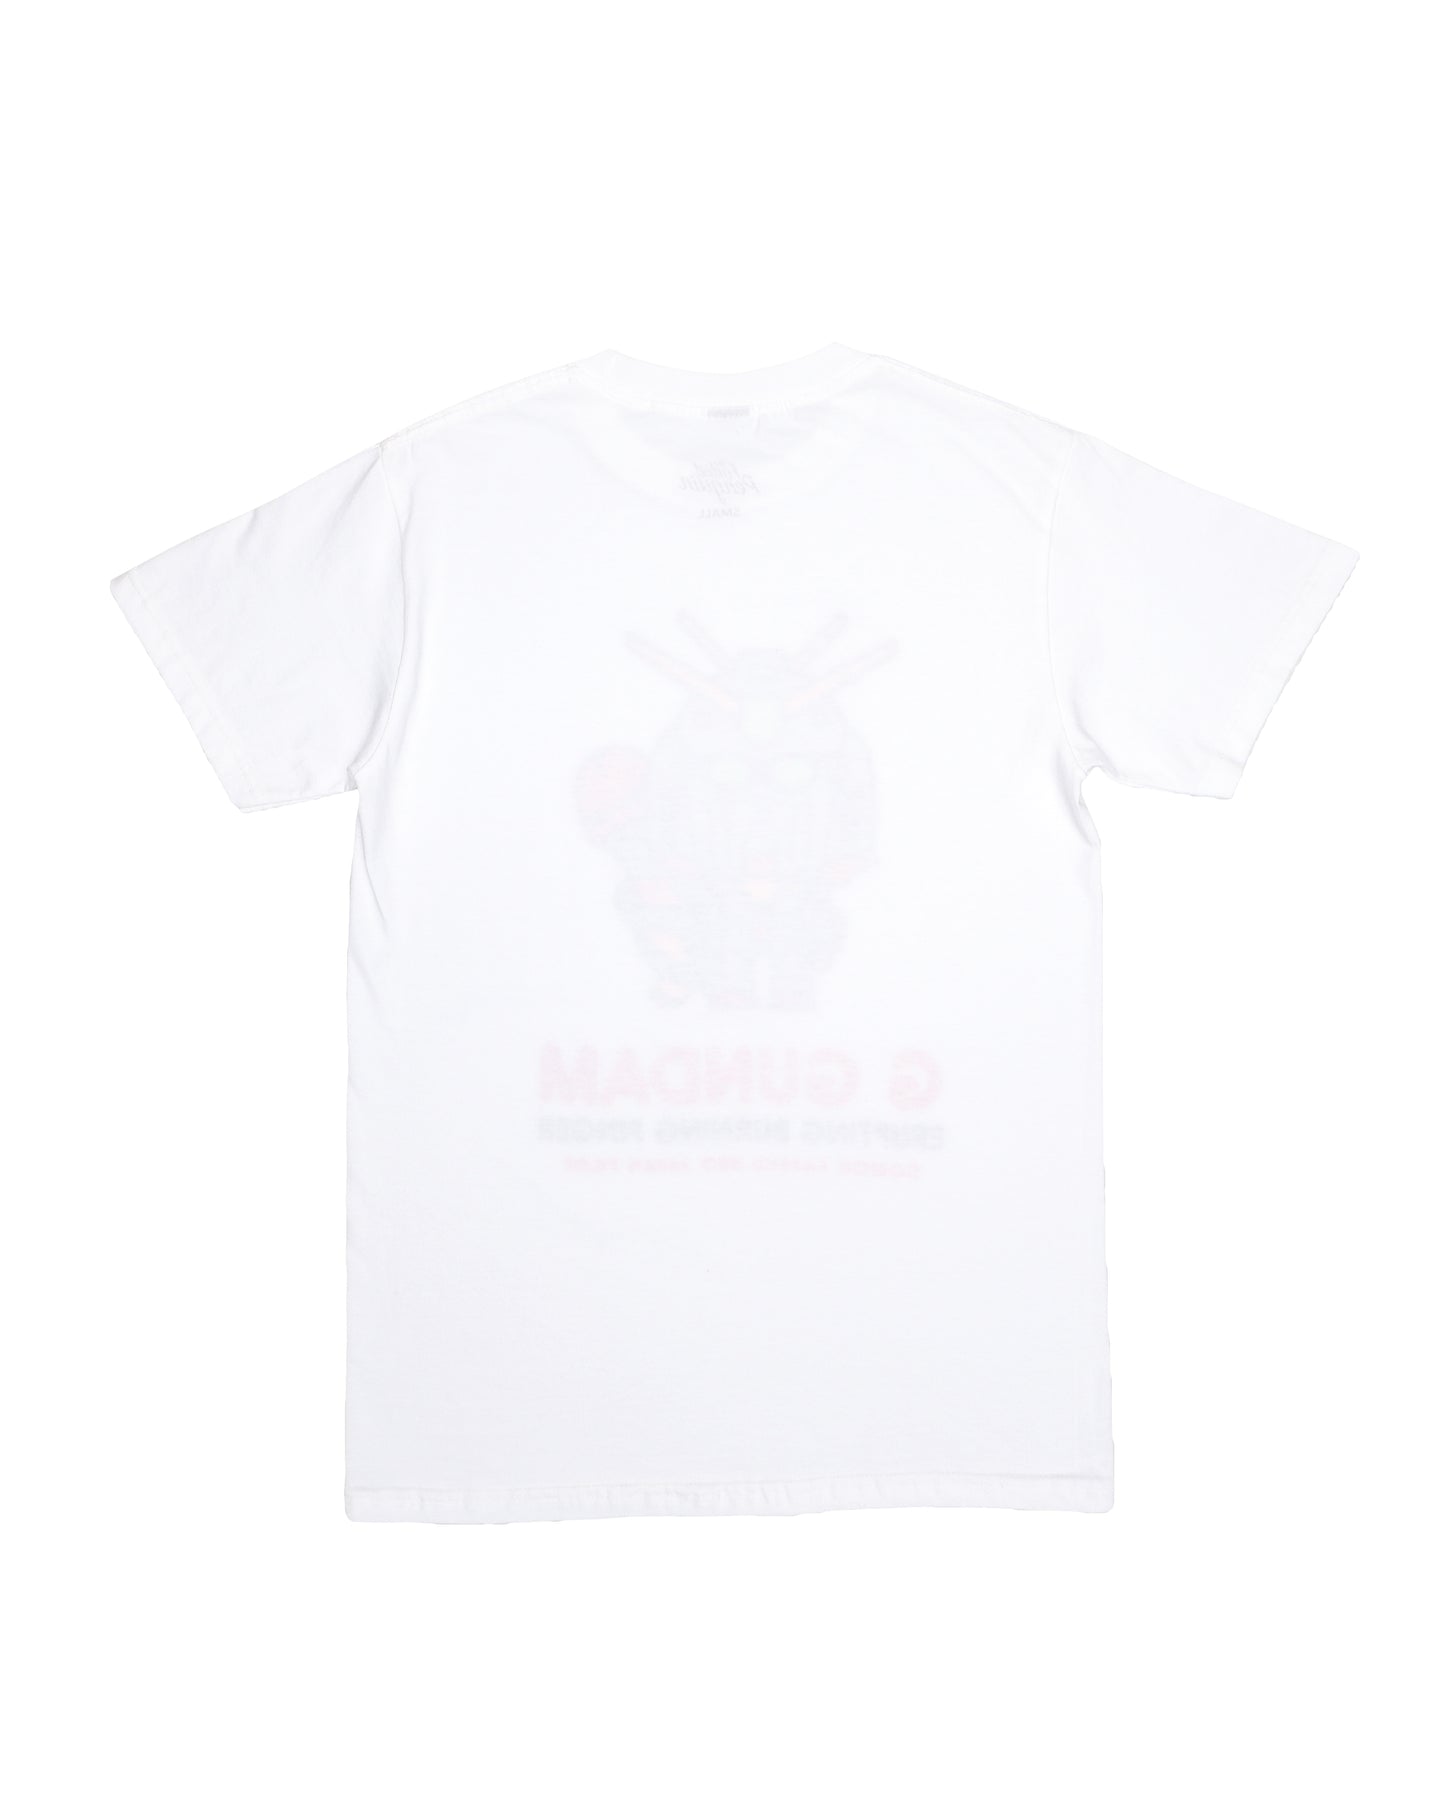 G Gundam T-Shirt (White)